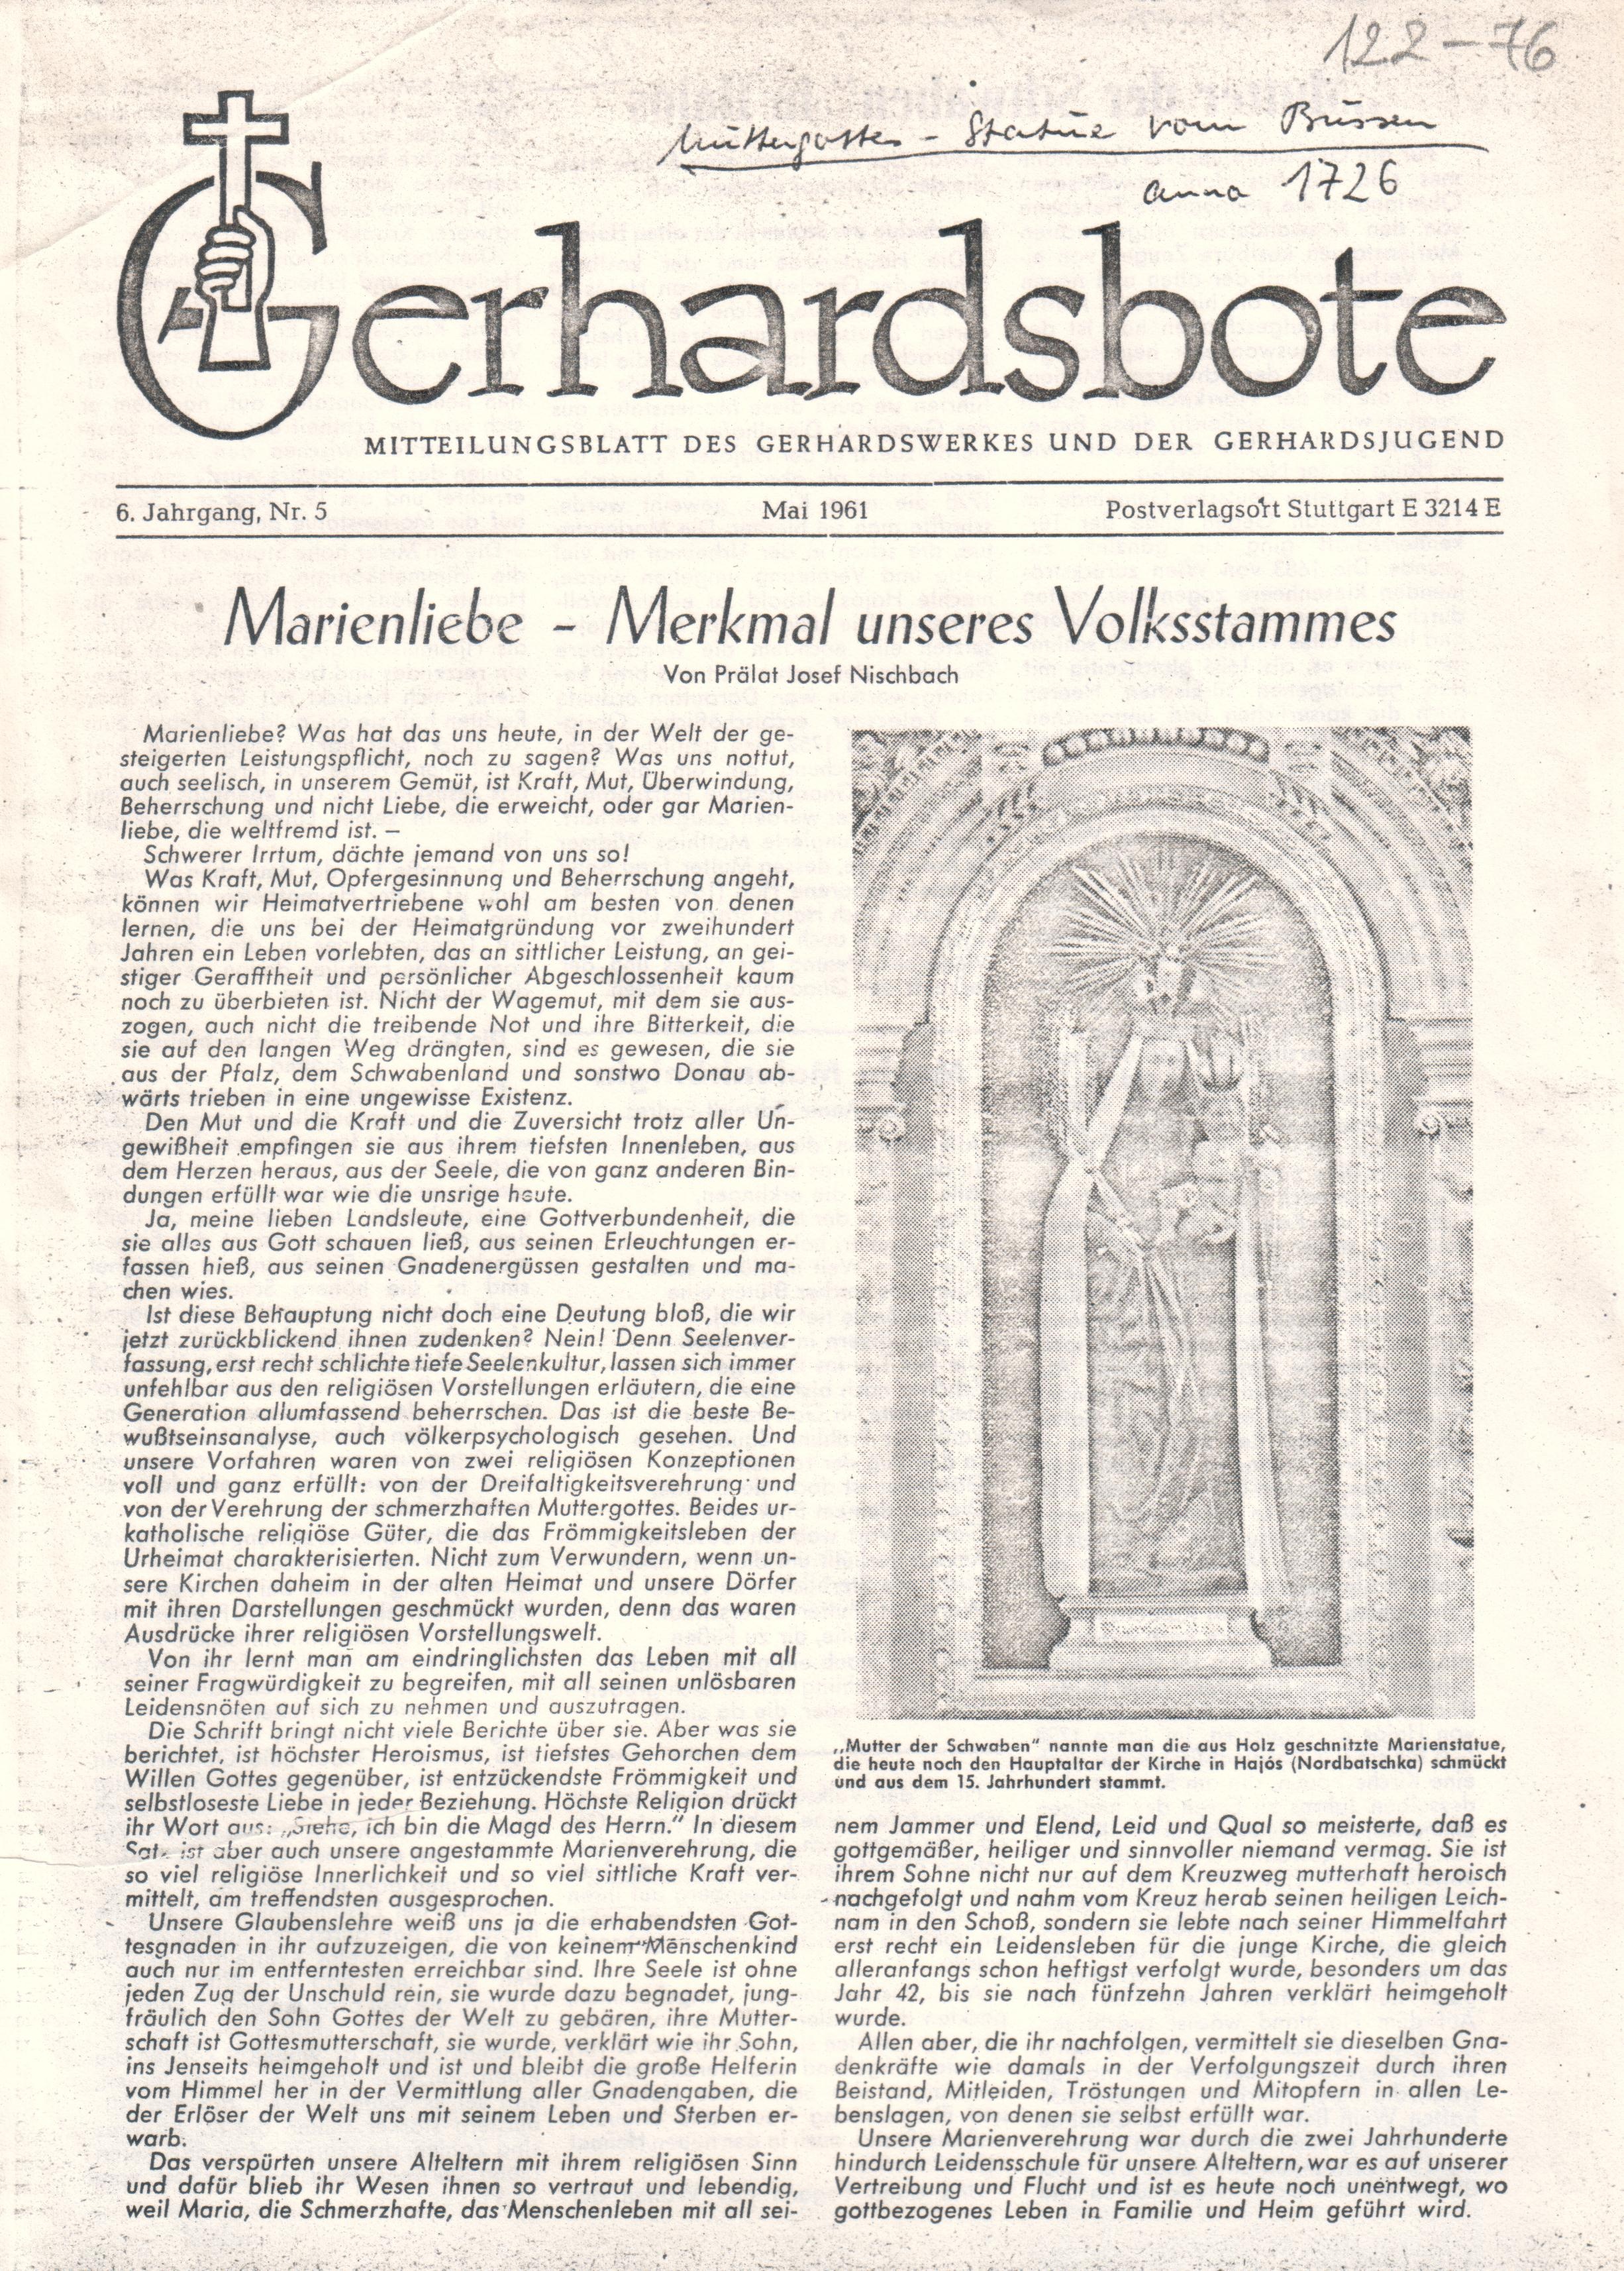 A hajósi búcsújárással kapcsolatos újságcikkek xerox másolata a Gerhardsbote c. újságból. (Viski Károly Múzeum Kalocsa RR-F)